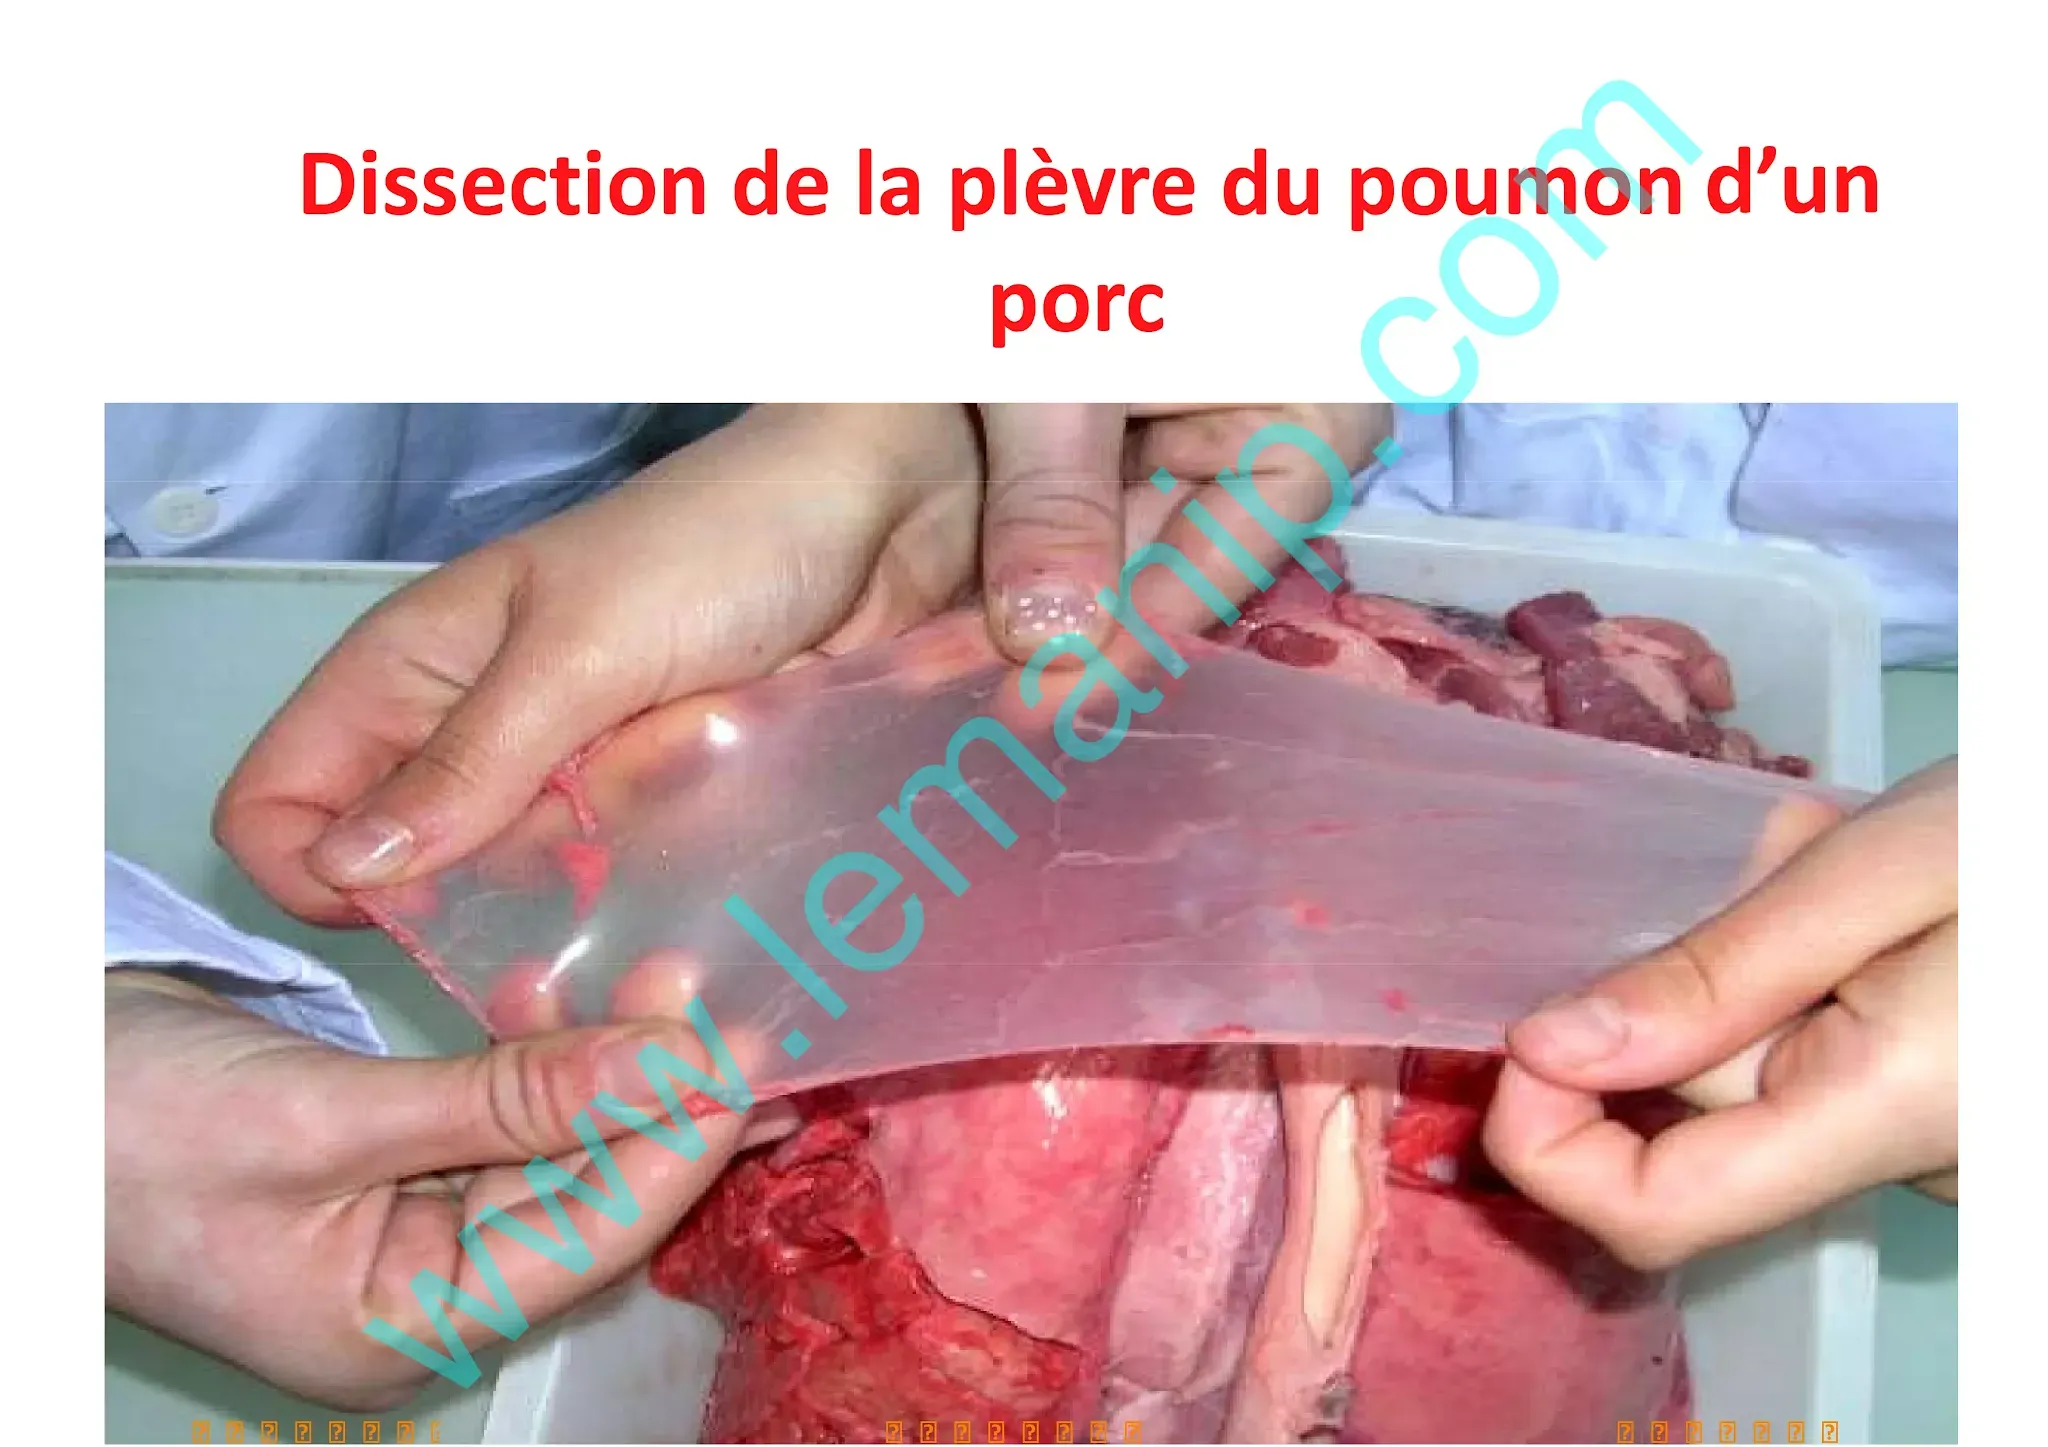 Dissection de la plèvre du poumon d’un porc